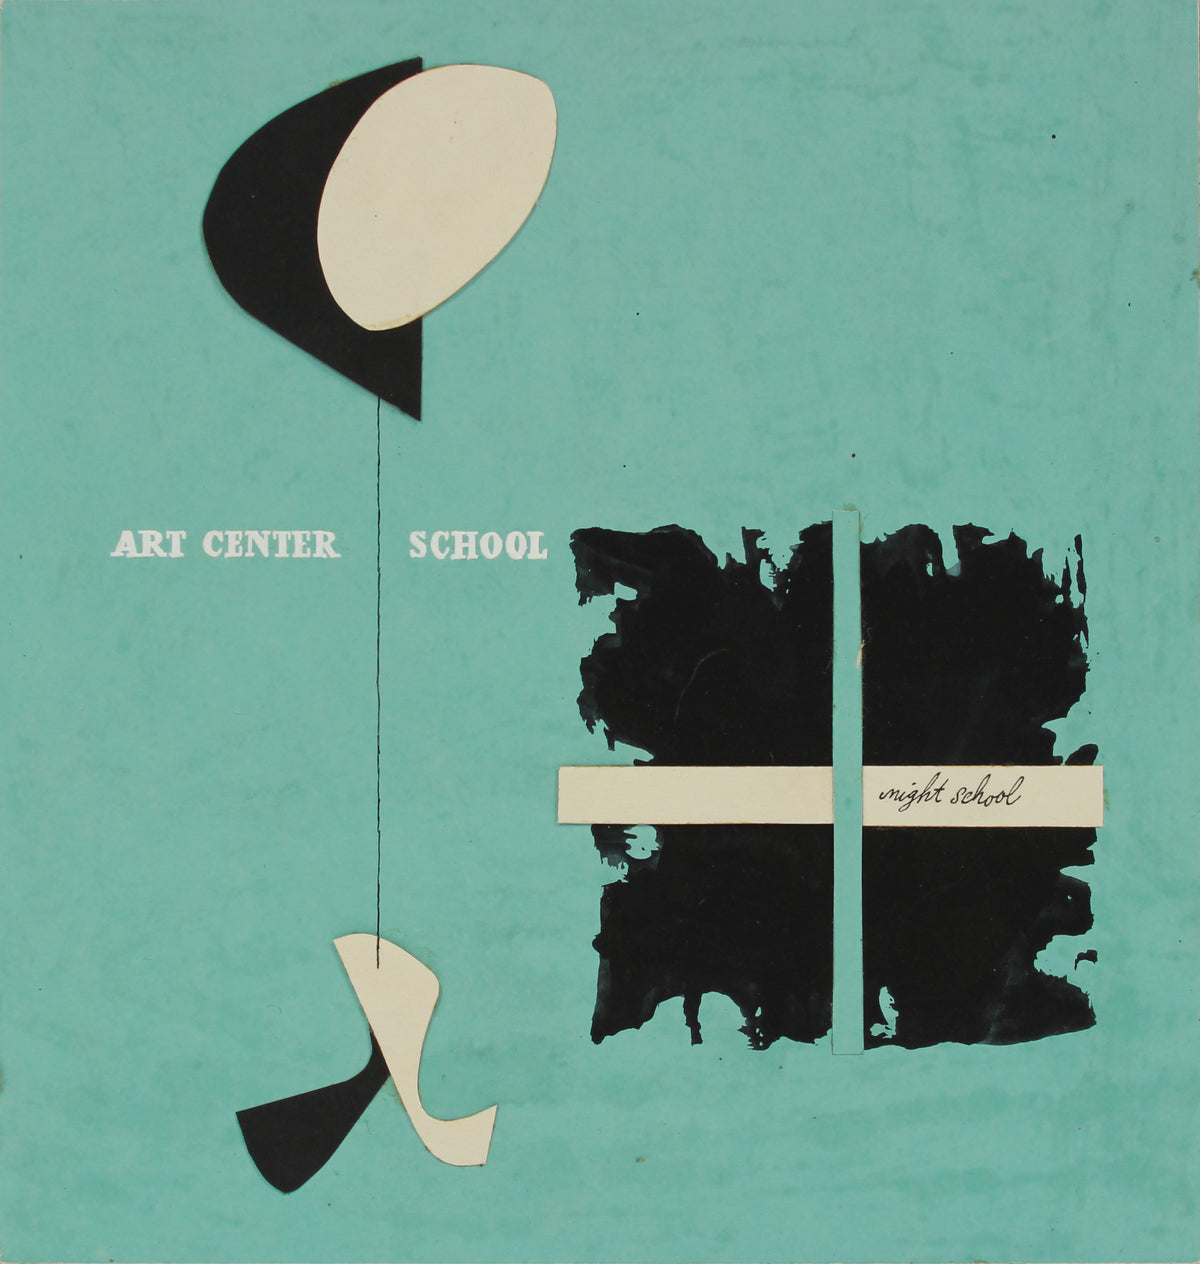 &lt;i&gt;Art Center School - Night School&lt;/i&gt; &lt;br&gt;1950-60s Mixed Media Collage &lt;br&gt;&lt;br&gt;#B0160